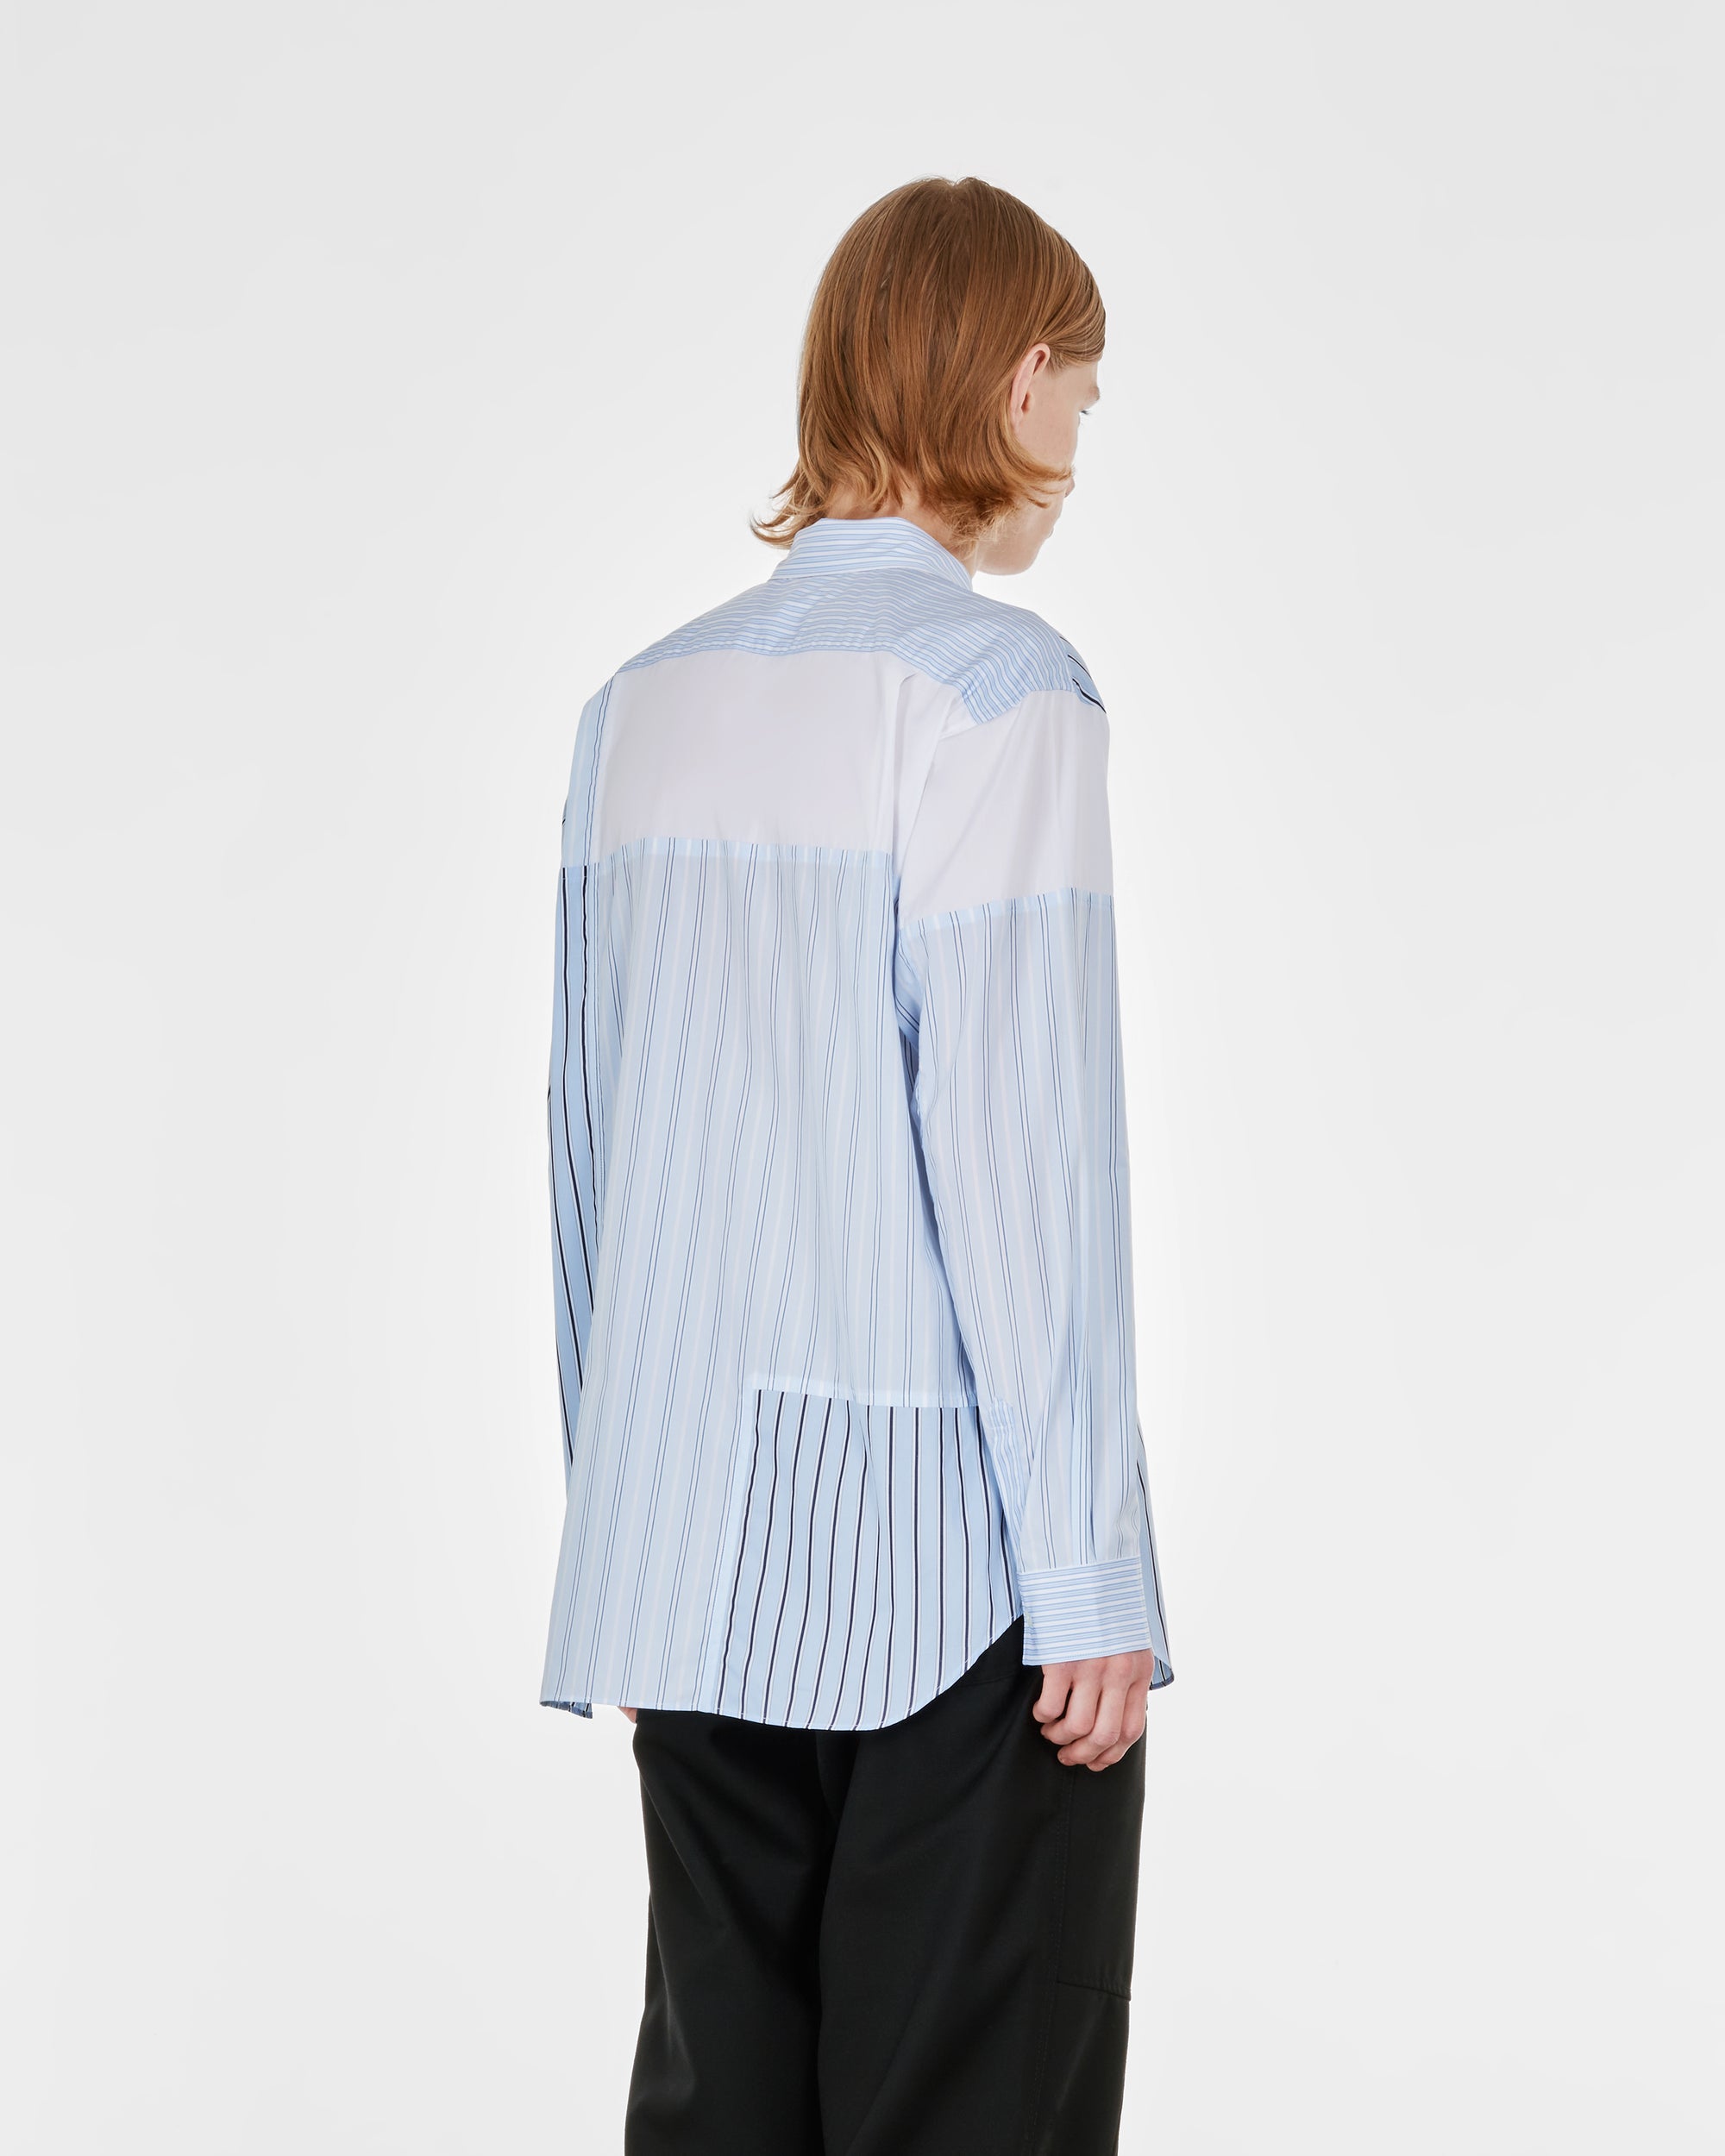 CDG Shirt - Men's Cotton Stripe Poplin Shirt - (White) view 4